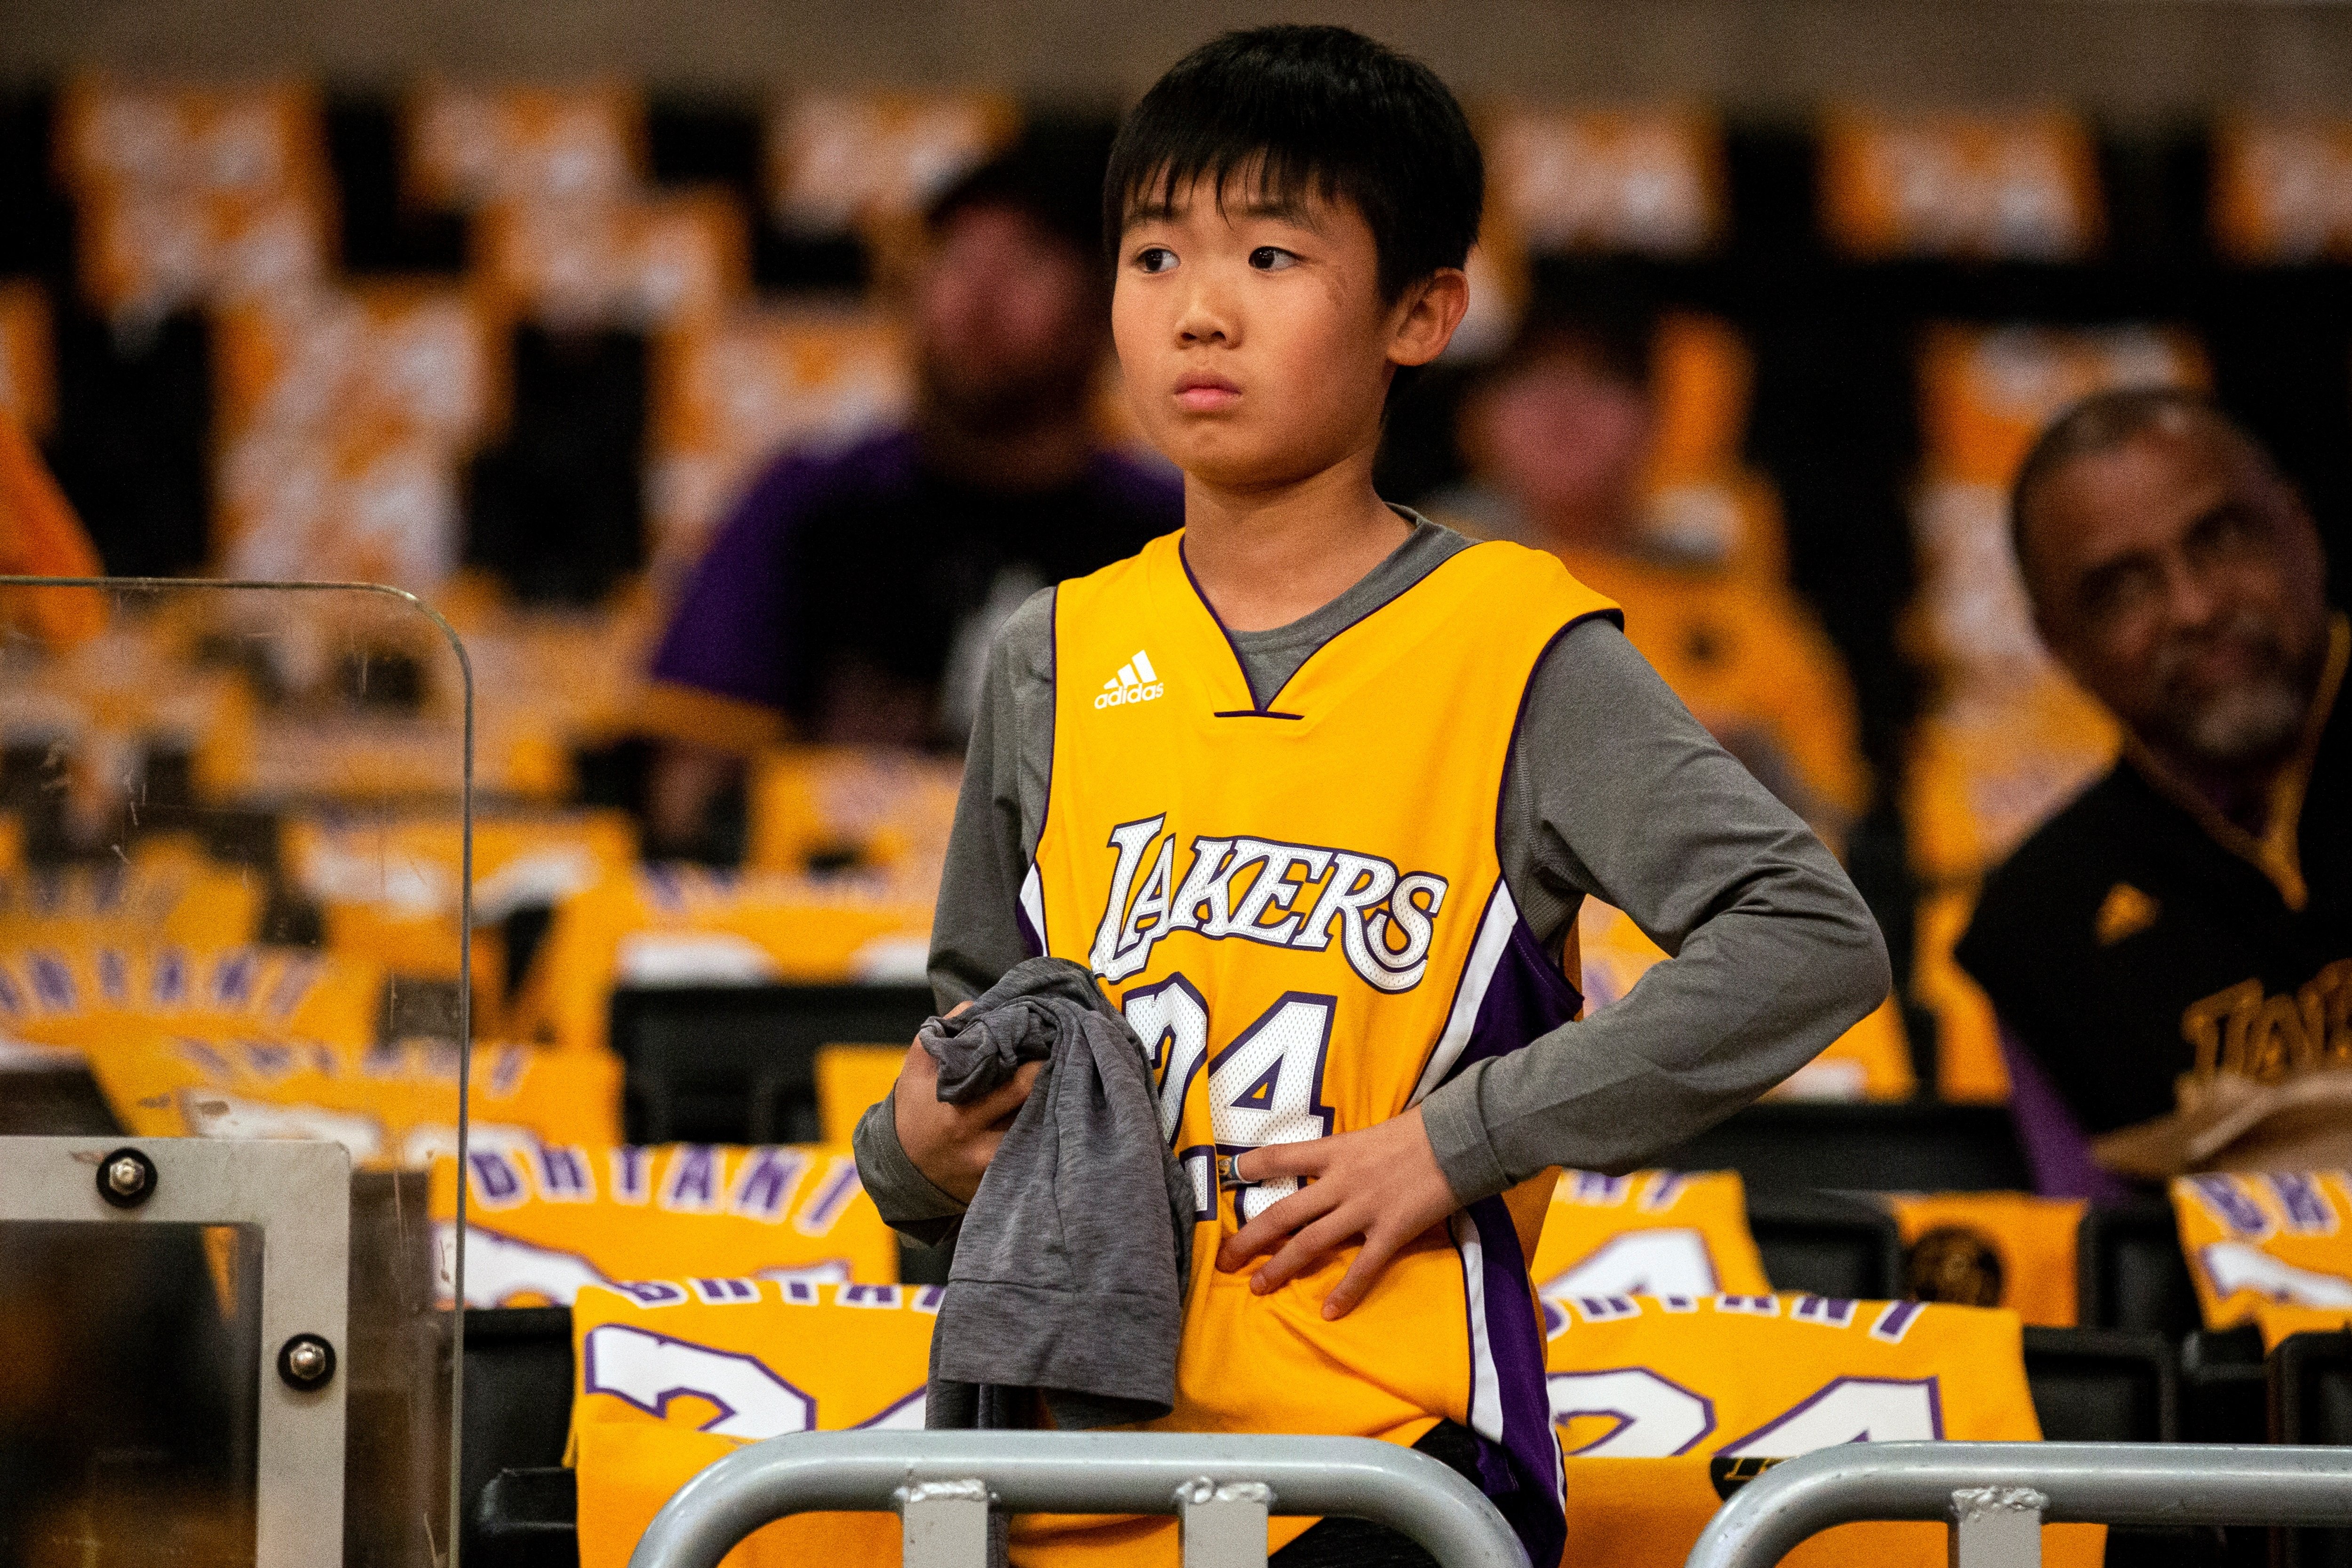 L'emotiu homenatge dels Lakers després de la mort de Kobe Bryant